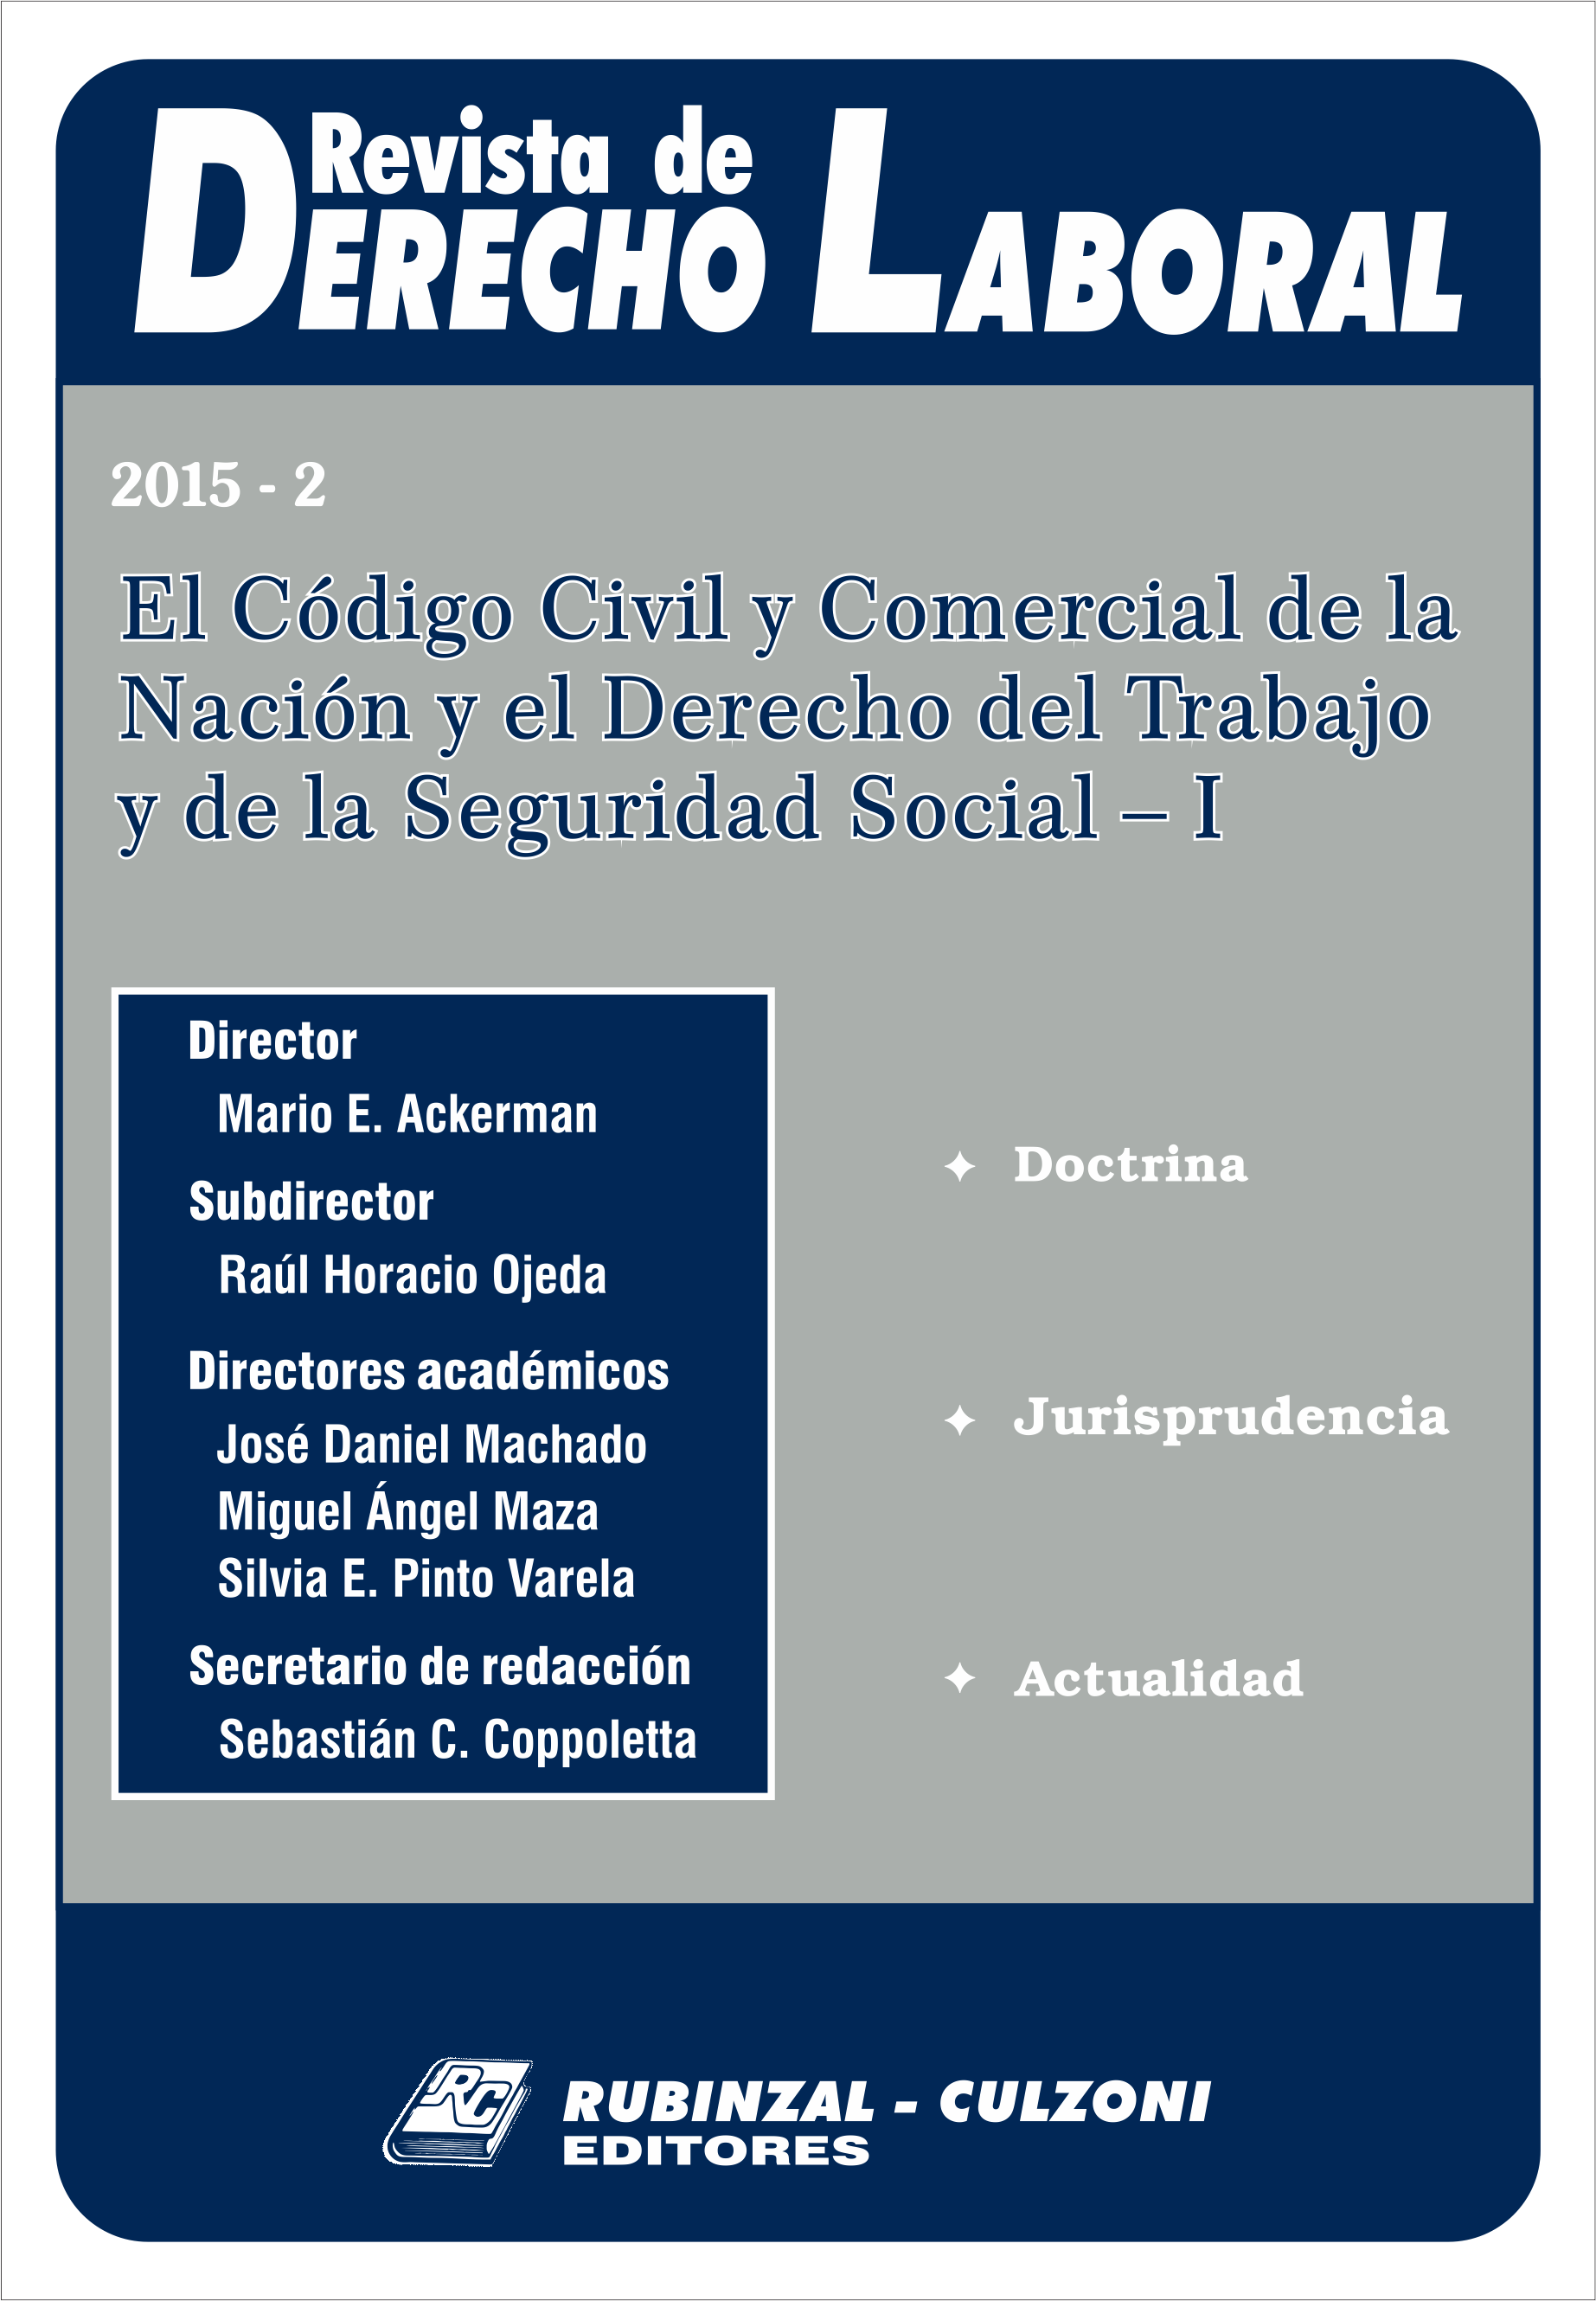 Revista de Derecho Laboral - El Código Civil y Comercial de la Nación y el Derecho del Trabajo y de la Seguridad Social - I.